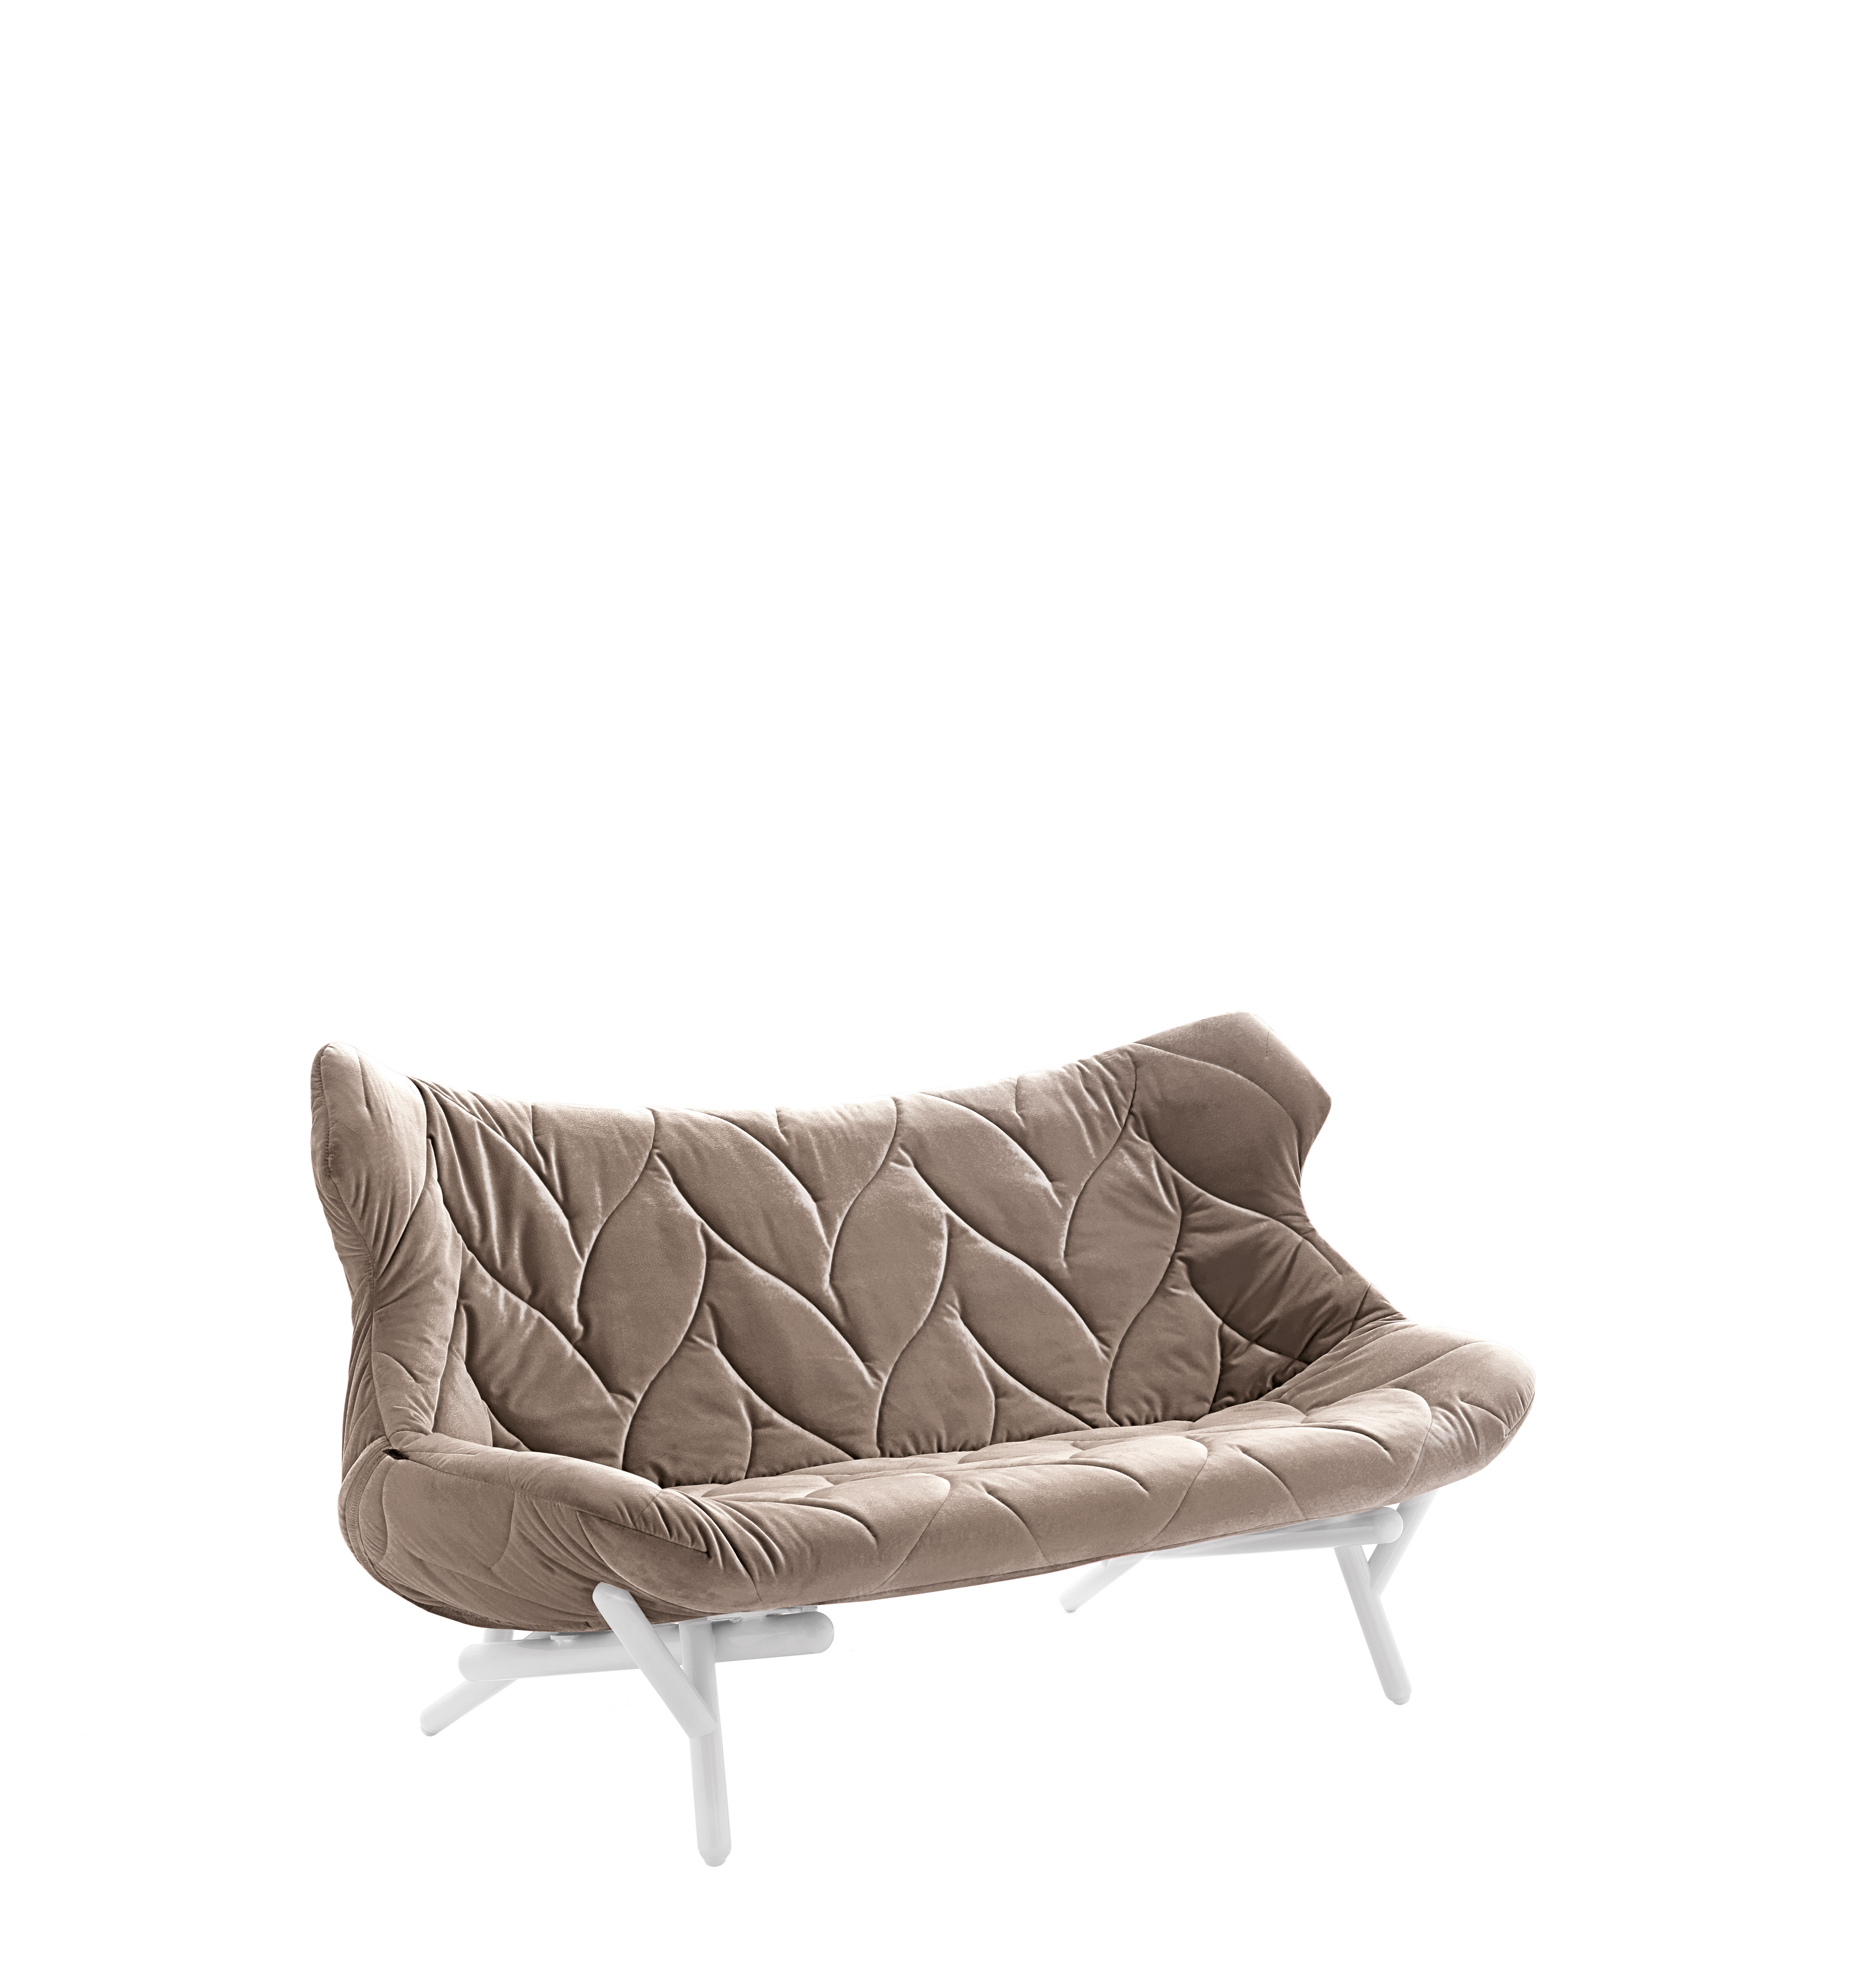 Foliage Sofa, Designed by Patricia Urquiola